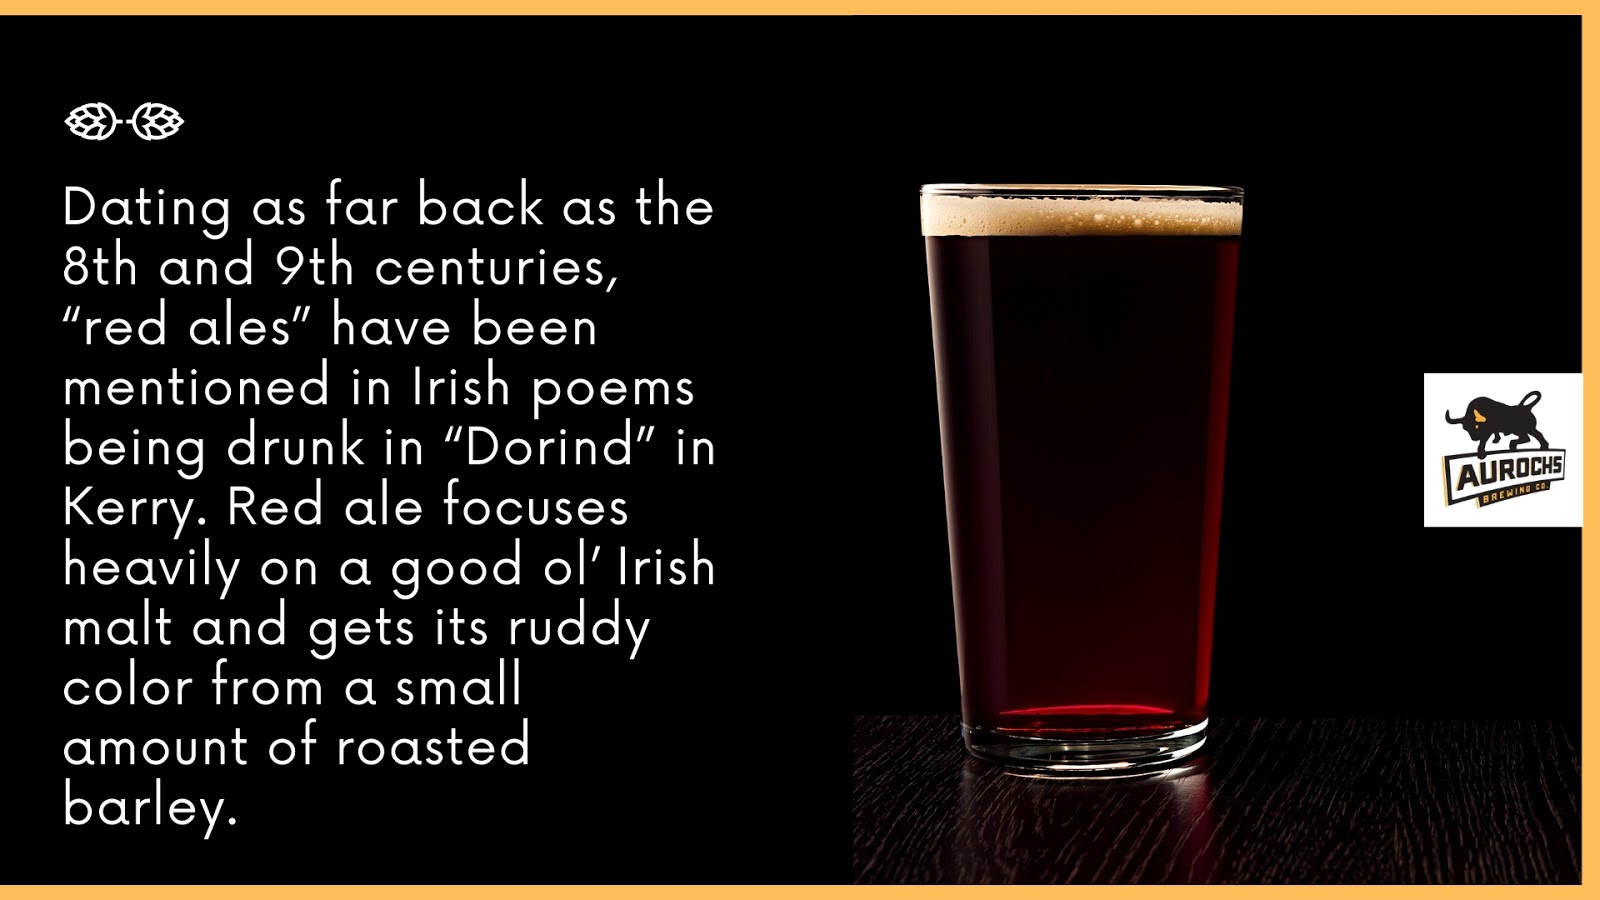 Red ale focuses heavily on a good ol' Irish malt